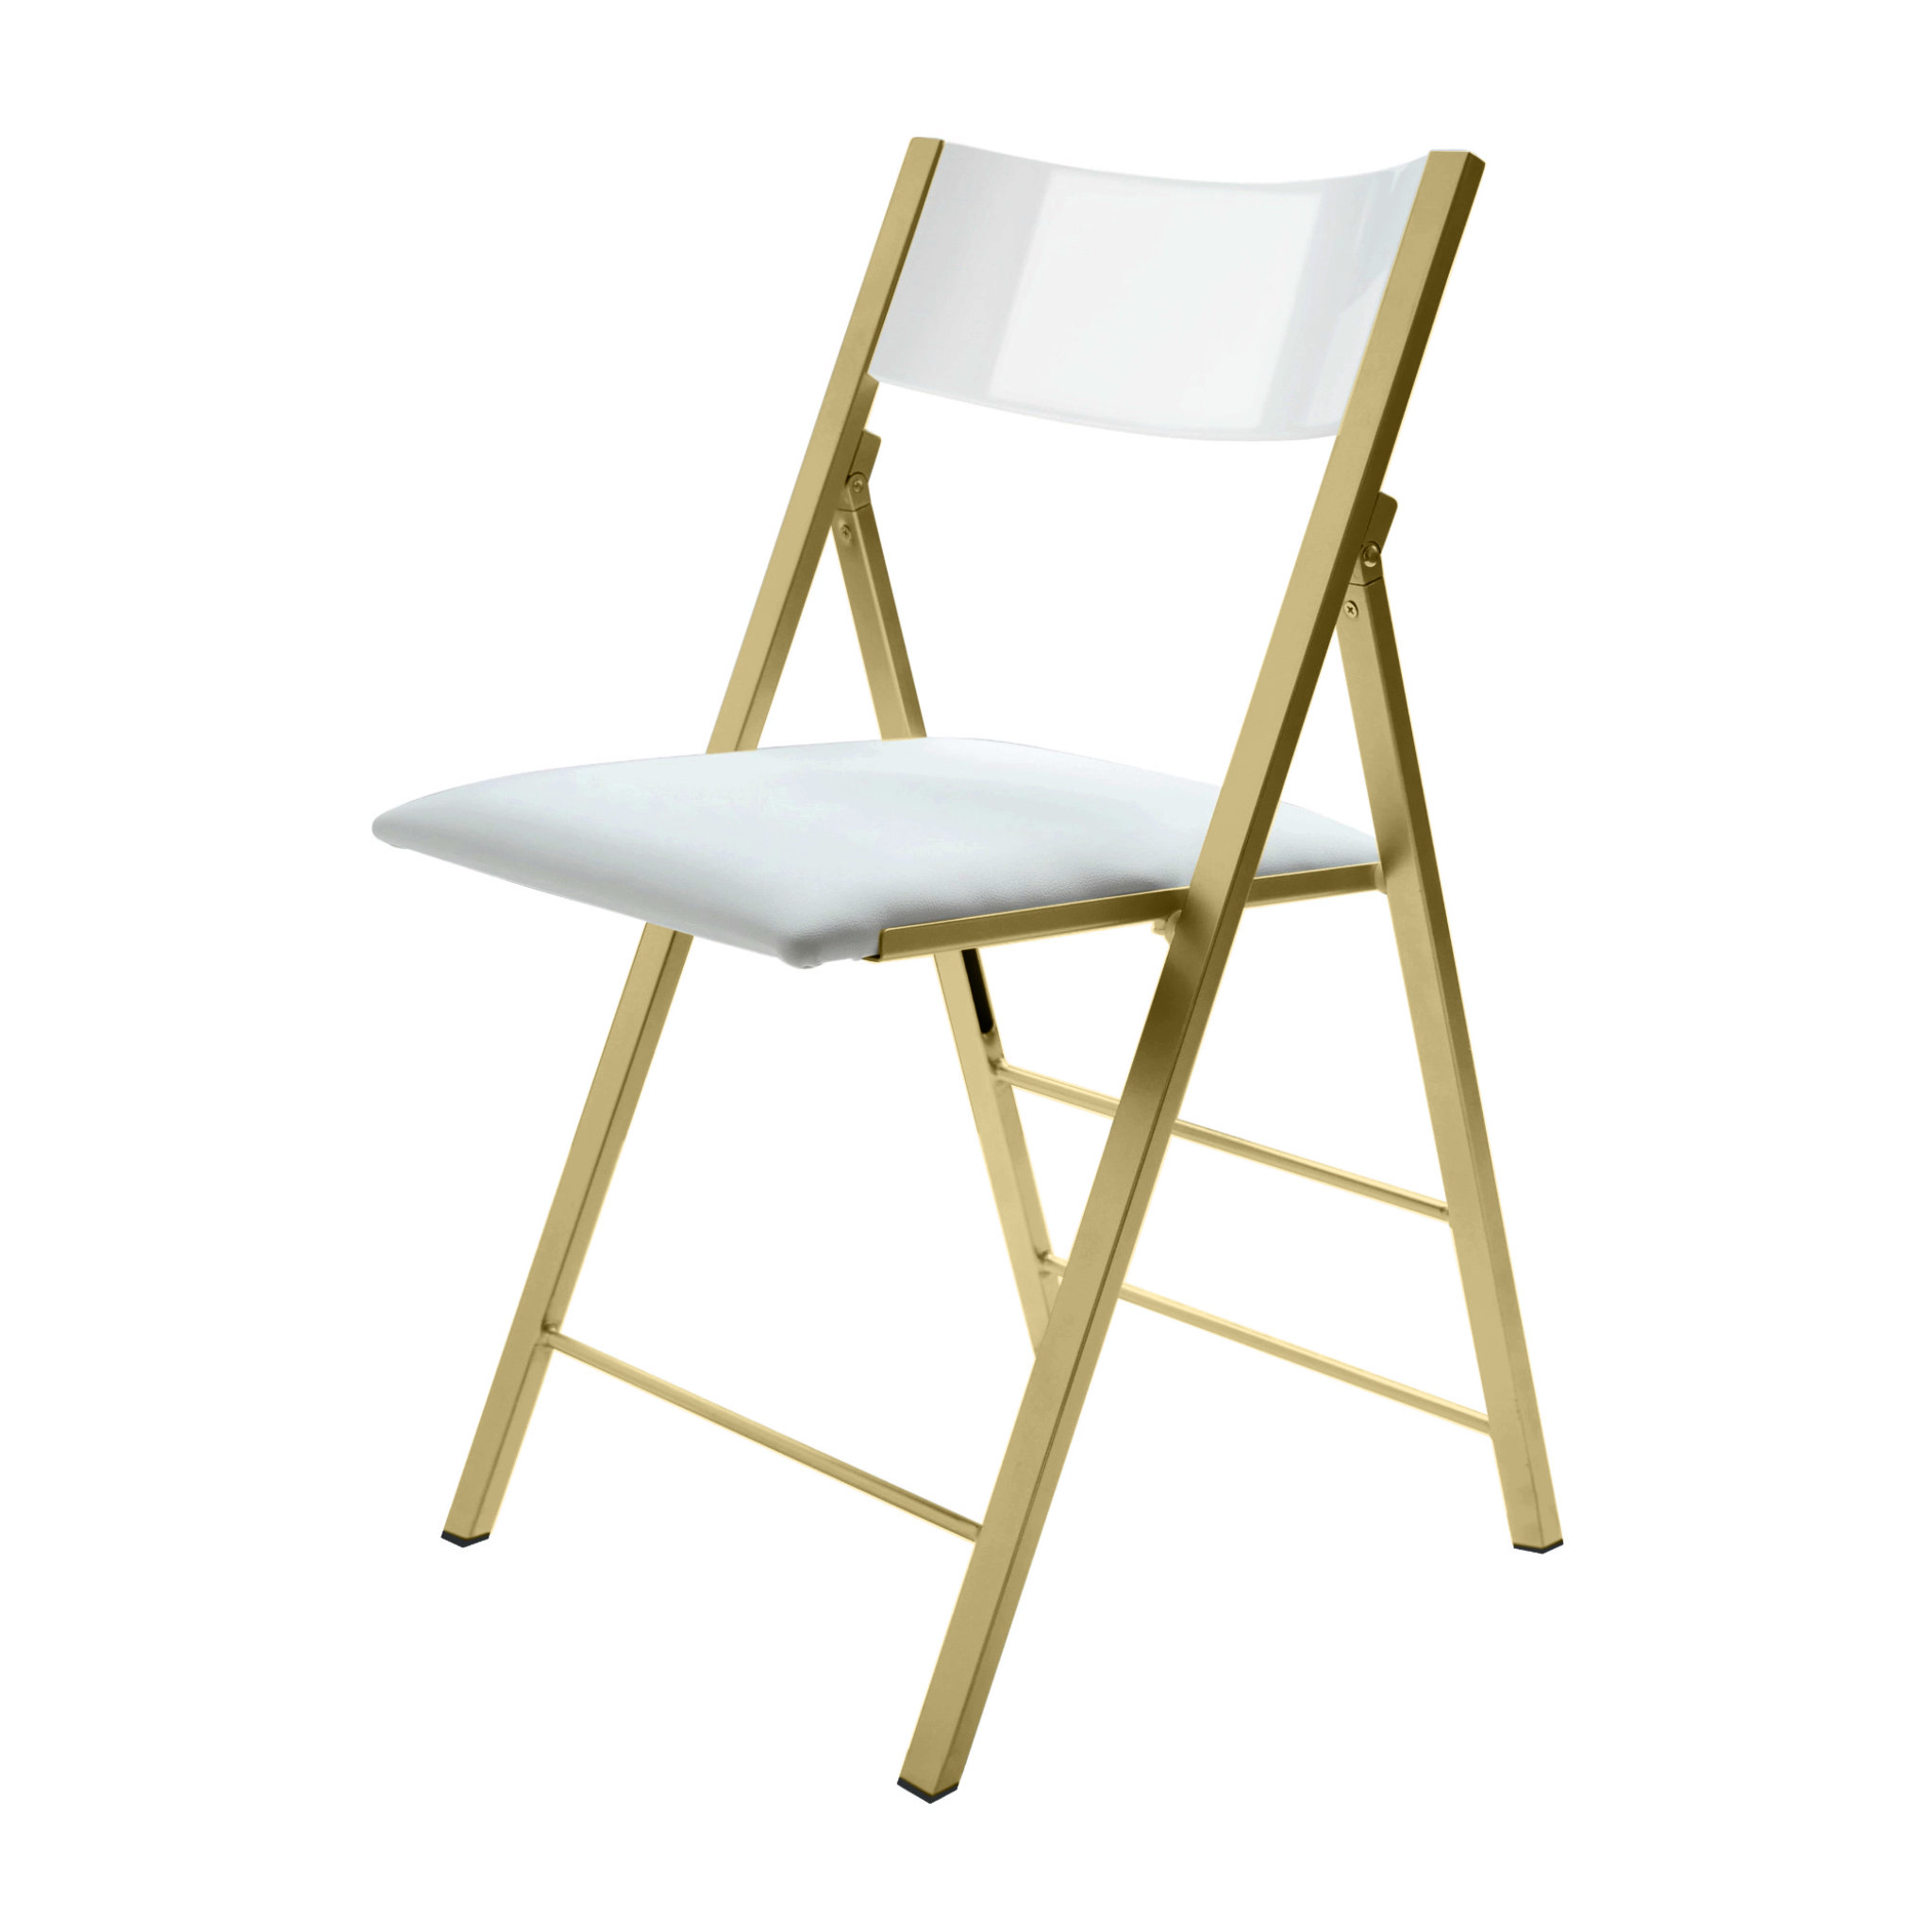 Nano Stylish Folding Chair - Set of 4